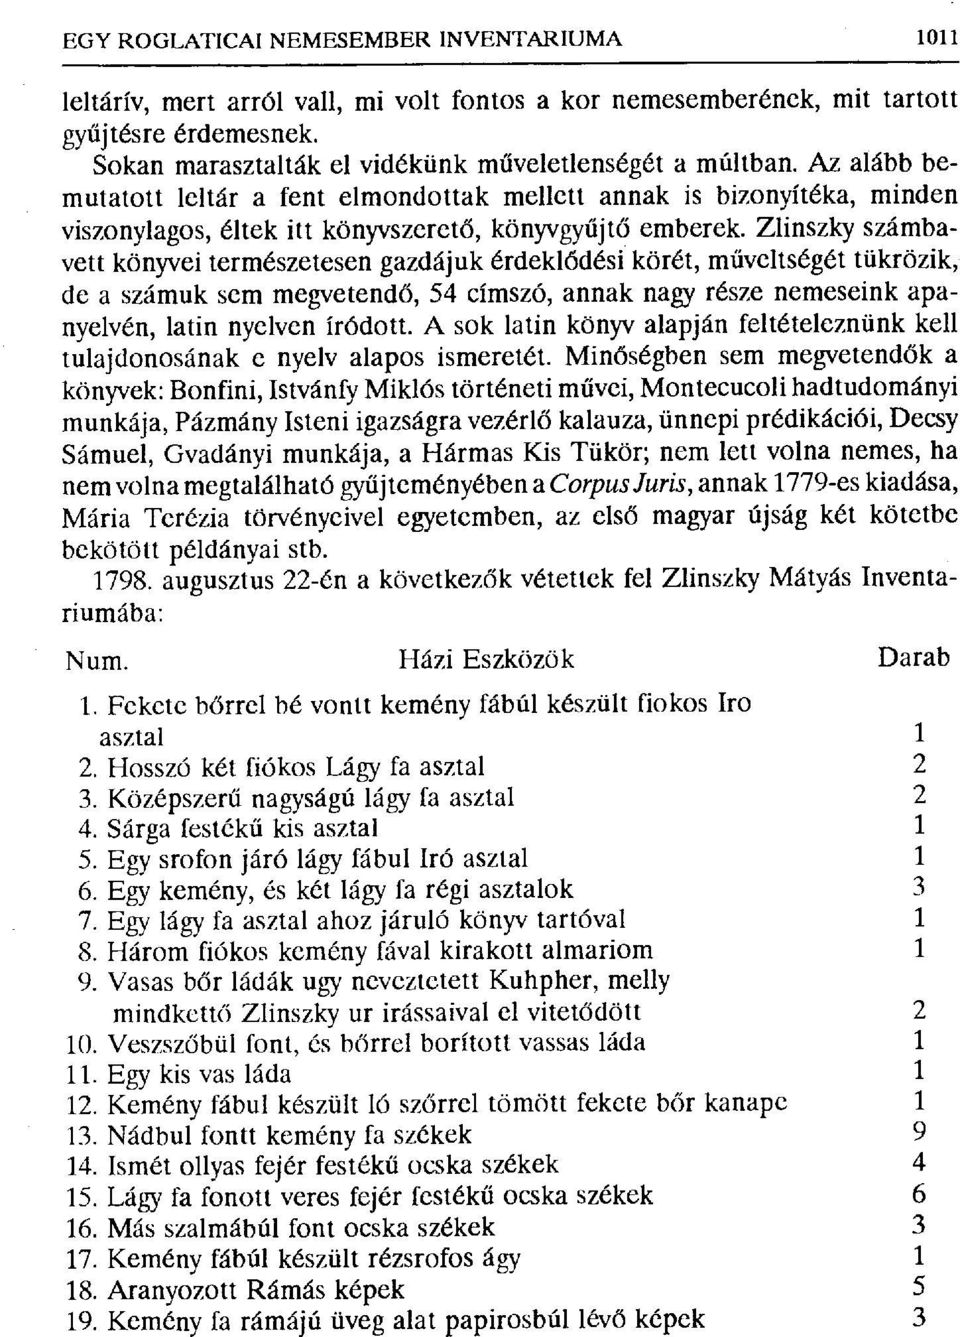 Zlinszky számbevett könyvei természetesen gazdájuk érdekl ődési körét, m űveltségét tükrözik, de a számuk sem megvetend ő, 54 címszó, annak nagy része nemeseink apanyelvén, latin nyelven íródott.